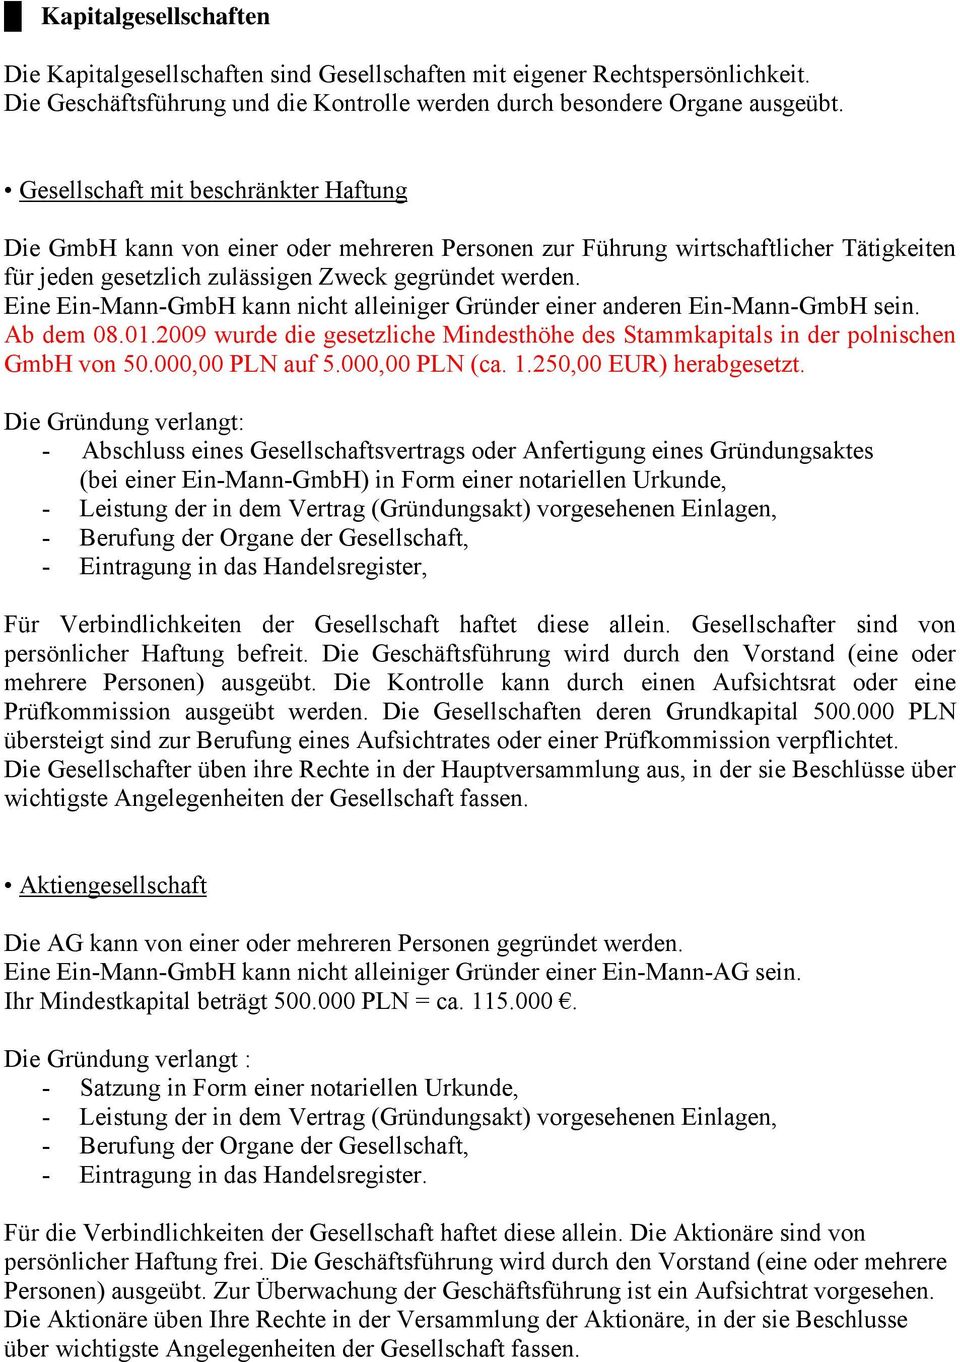 Eine Ein-Mann-GmbH kann nicht alleiniger Gründer einer anderen Ein-Mann-GmbH sein. Ab dem 08.01.2009 wurde die gesetzliche Mindesthöhe des Stammkapitals in der polnischen GmbH von 50.000,00 PLN auf 5.